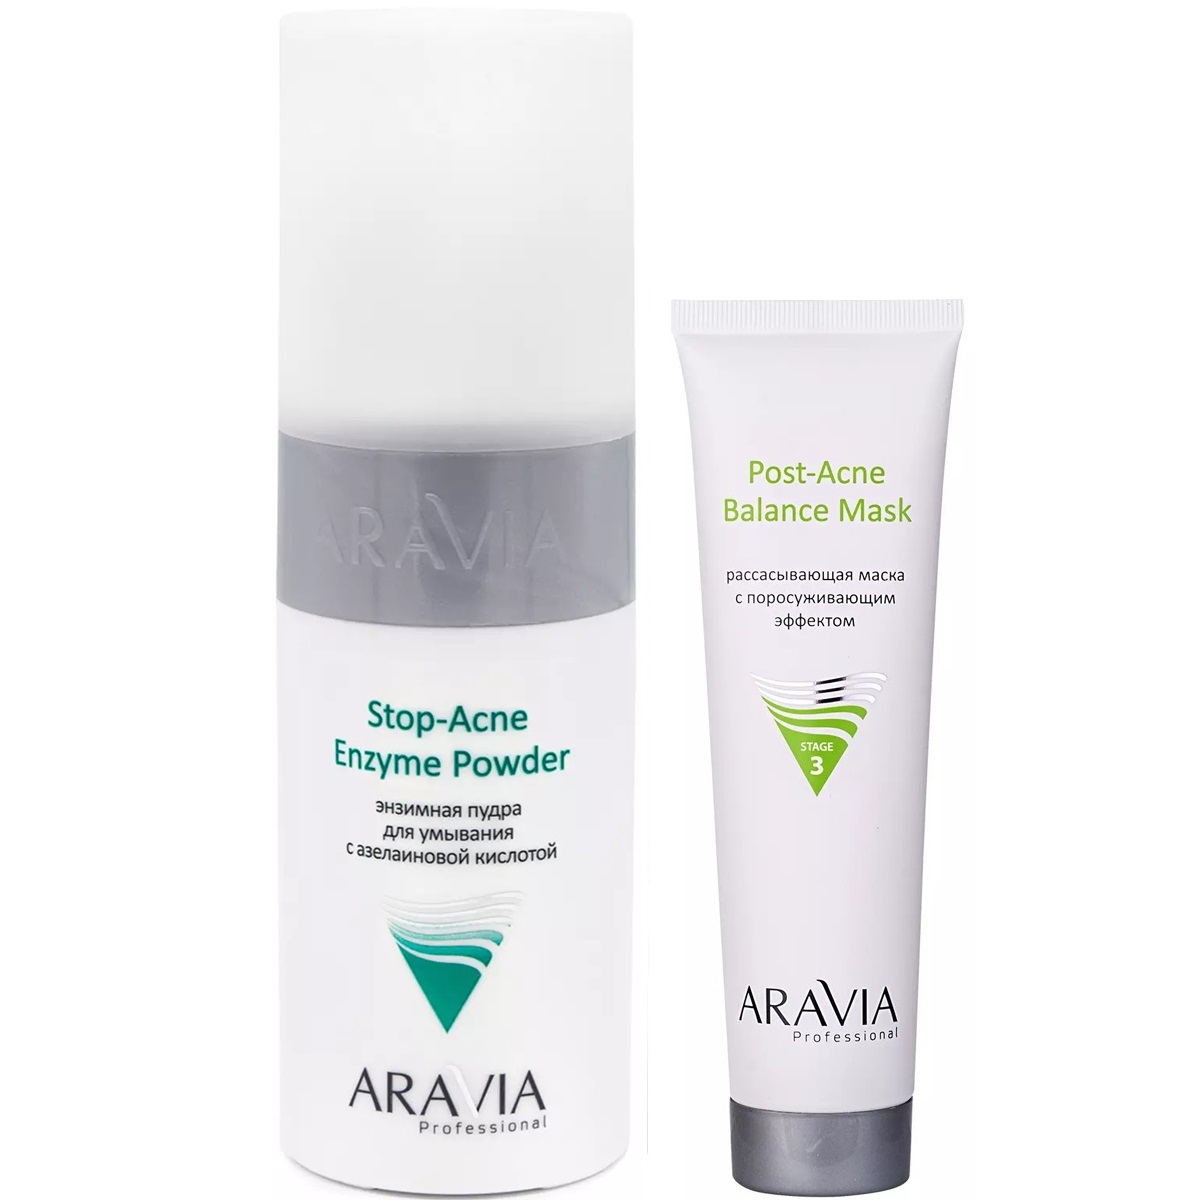 Aravia Professional Набор для проблемной и жирной кожи: маска, 100 мл + энзимная пудра, 150 мл (Aravia Professional, Уход за лицом) средства для умывания irc 247 энзимная пудра с пребиотиками для сухой чувствительной и проблемной кожи